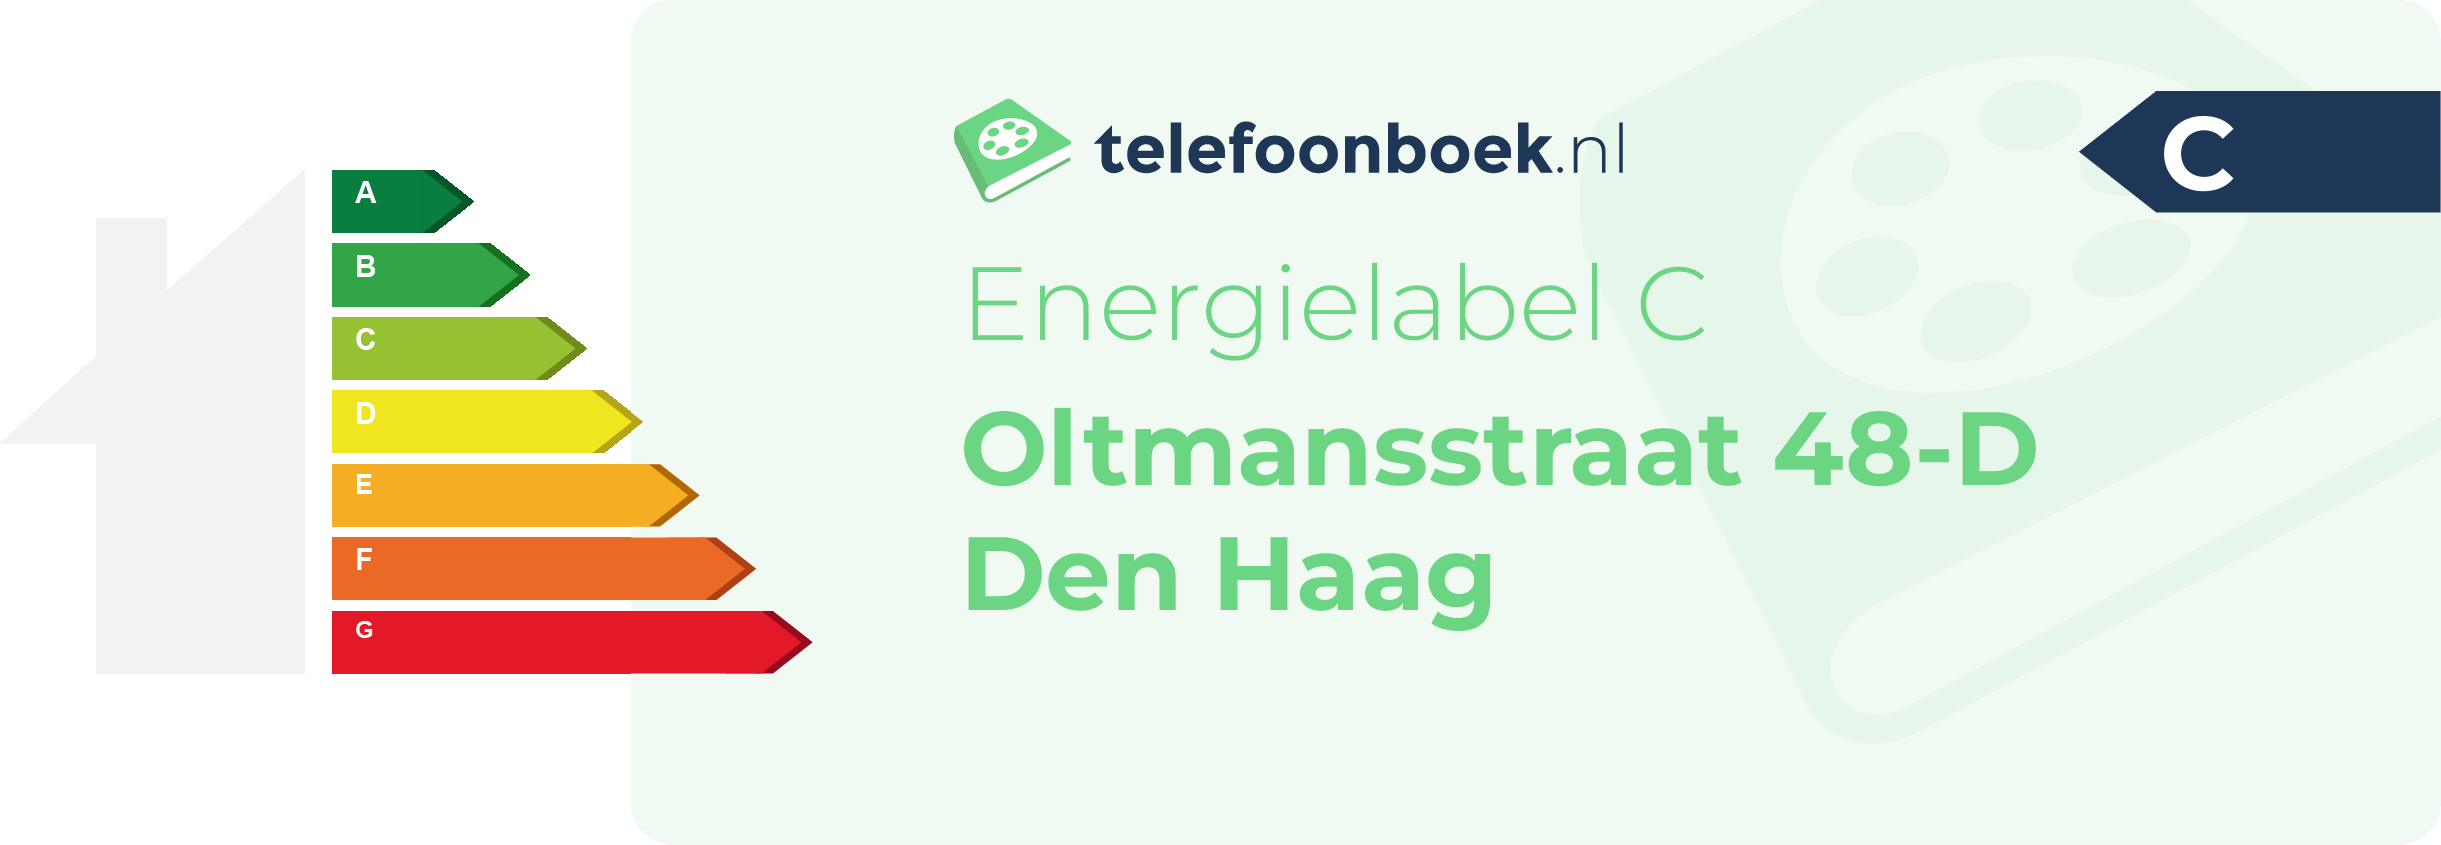 Energielabel Oltmansstraat 48-D Den Haag